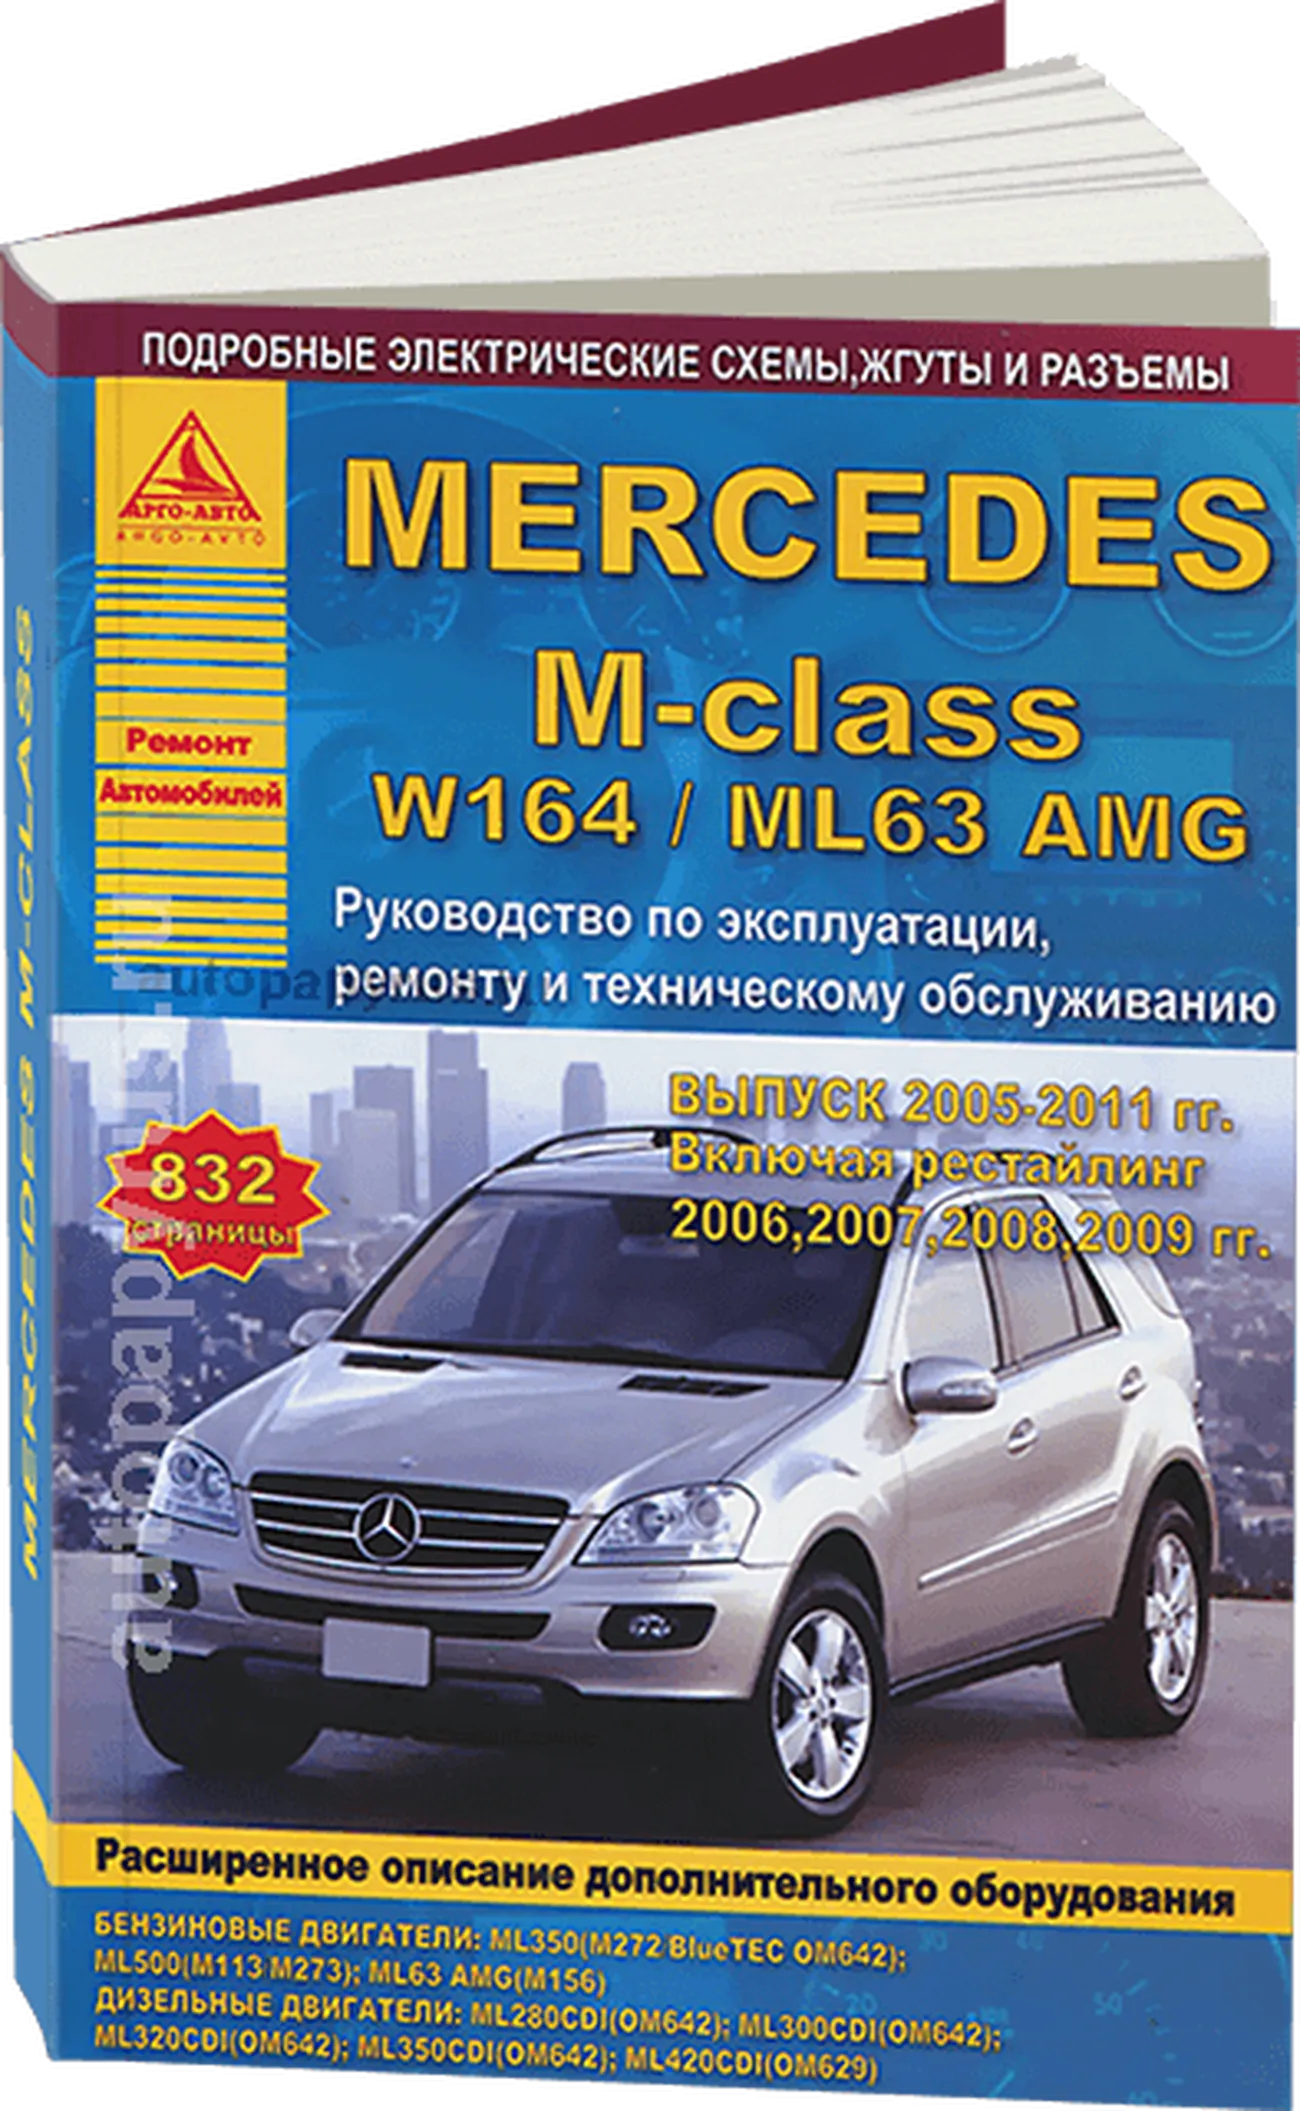 Книга: MERCEDES-BENZ M-CLASS (W-164 / ML63 AMG) (б , д) 2005-2011 г.в. рем., экспл., то | Арго-Авто